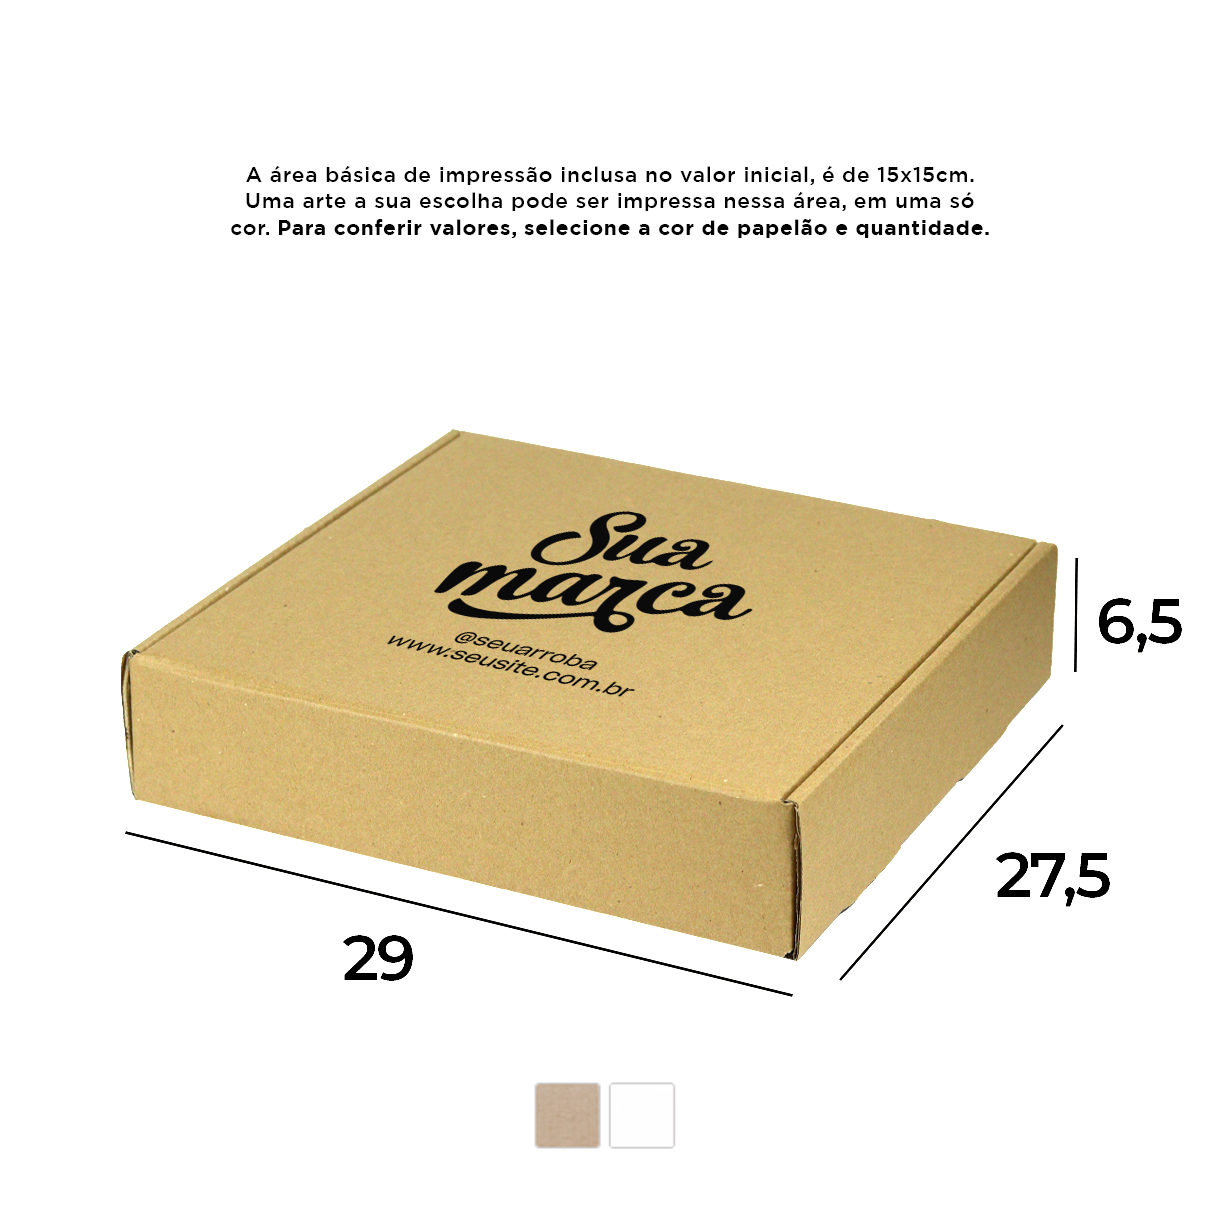 Caixa de Papelão Personalizada (29x27,5x6,5) Sedex 19